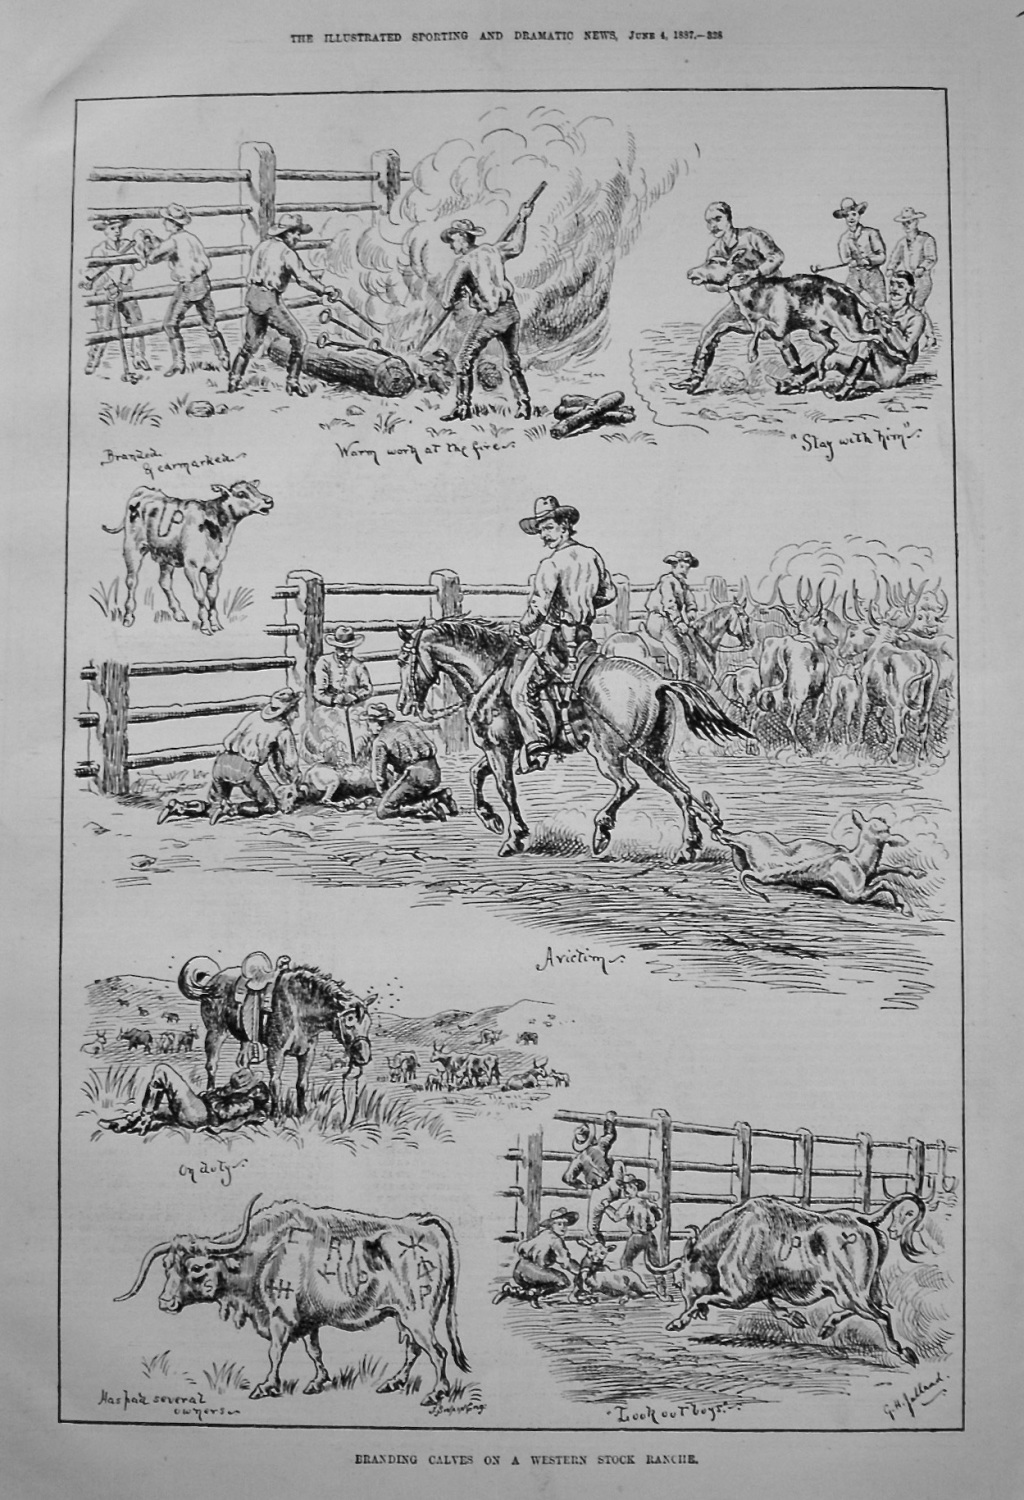 Branding Calves on a Western Stock Ranche. 1887